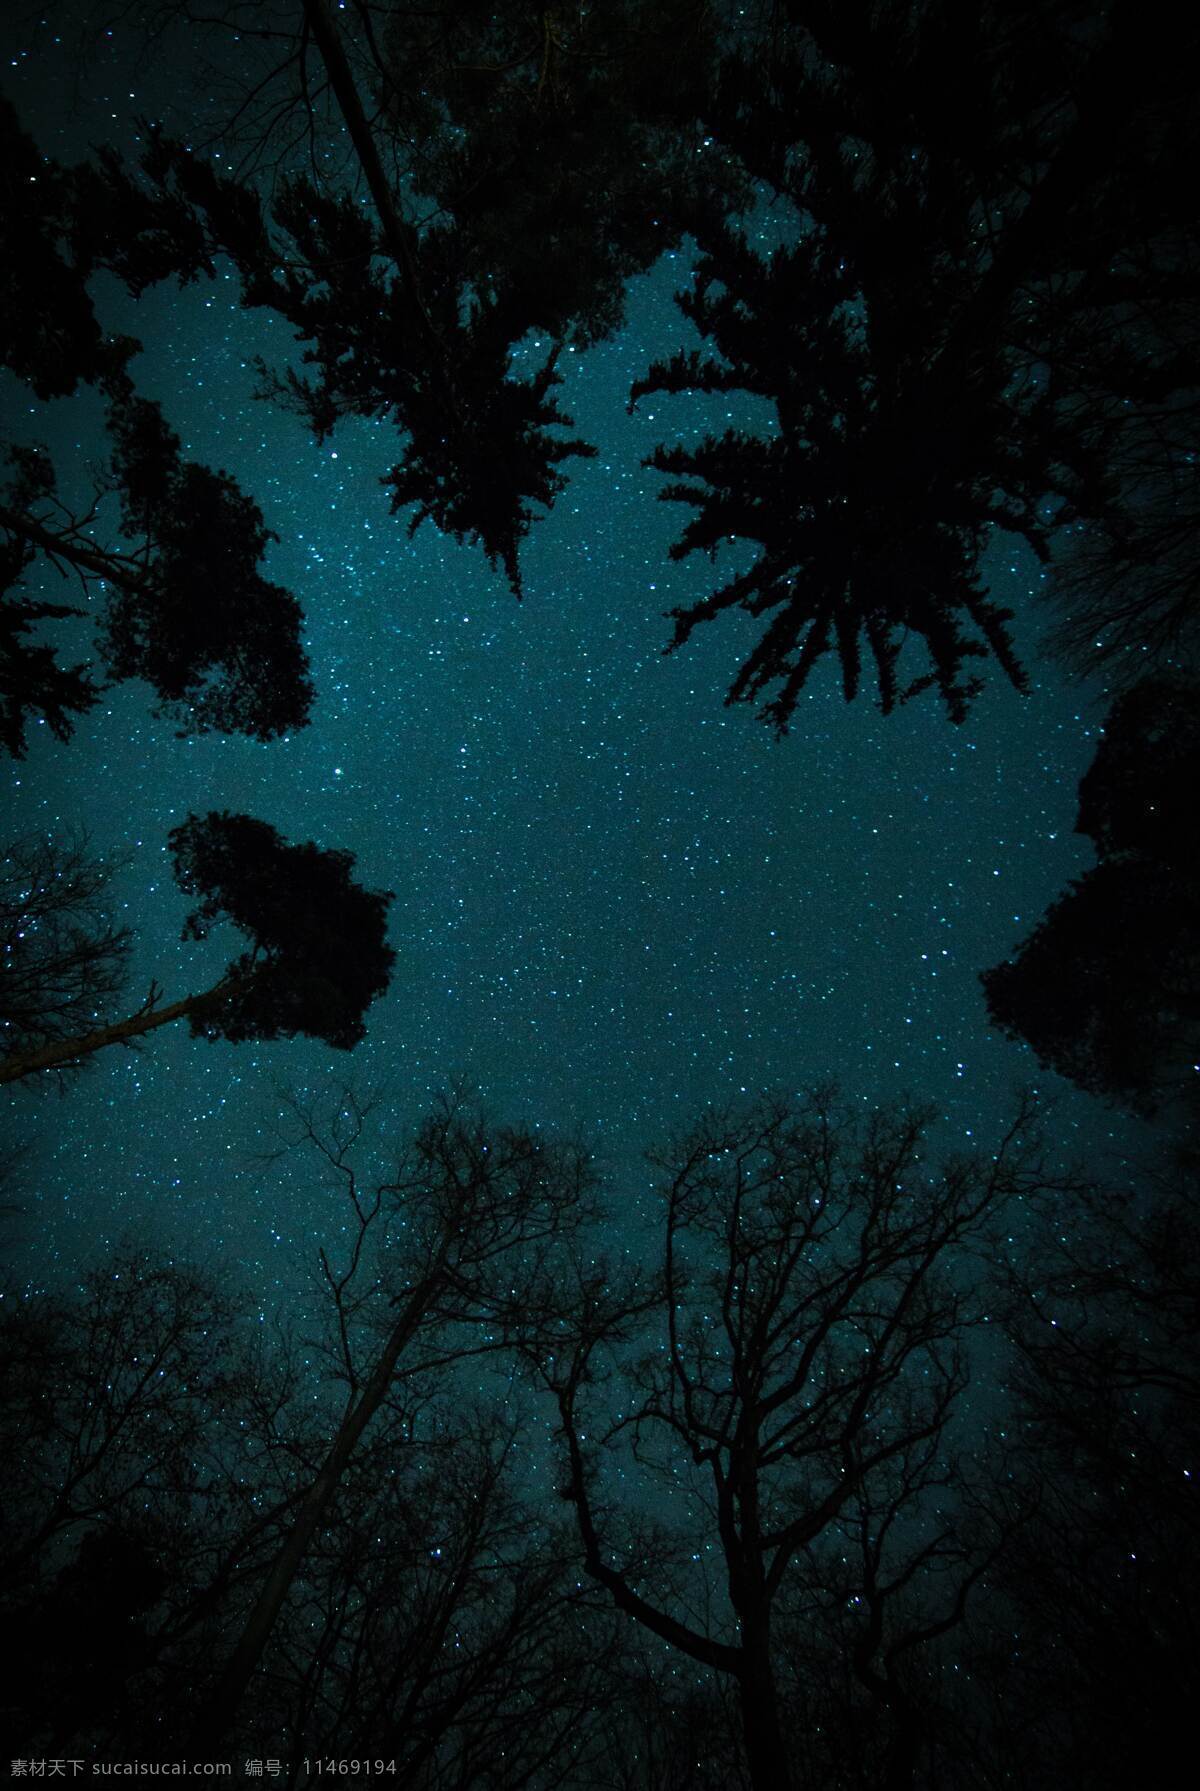 暗夜星空 暗夜 星空 星空背景 夏夜 树林 树木 安静